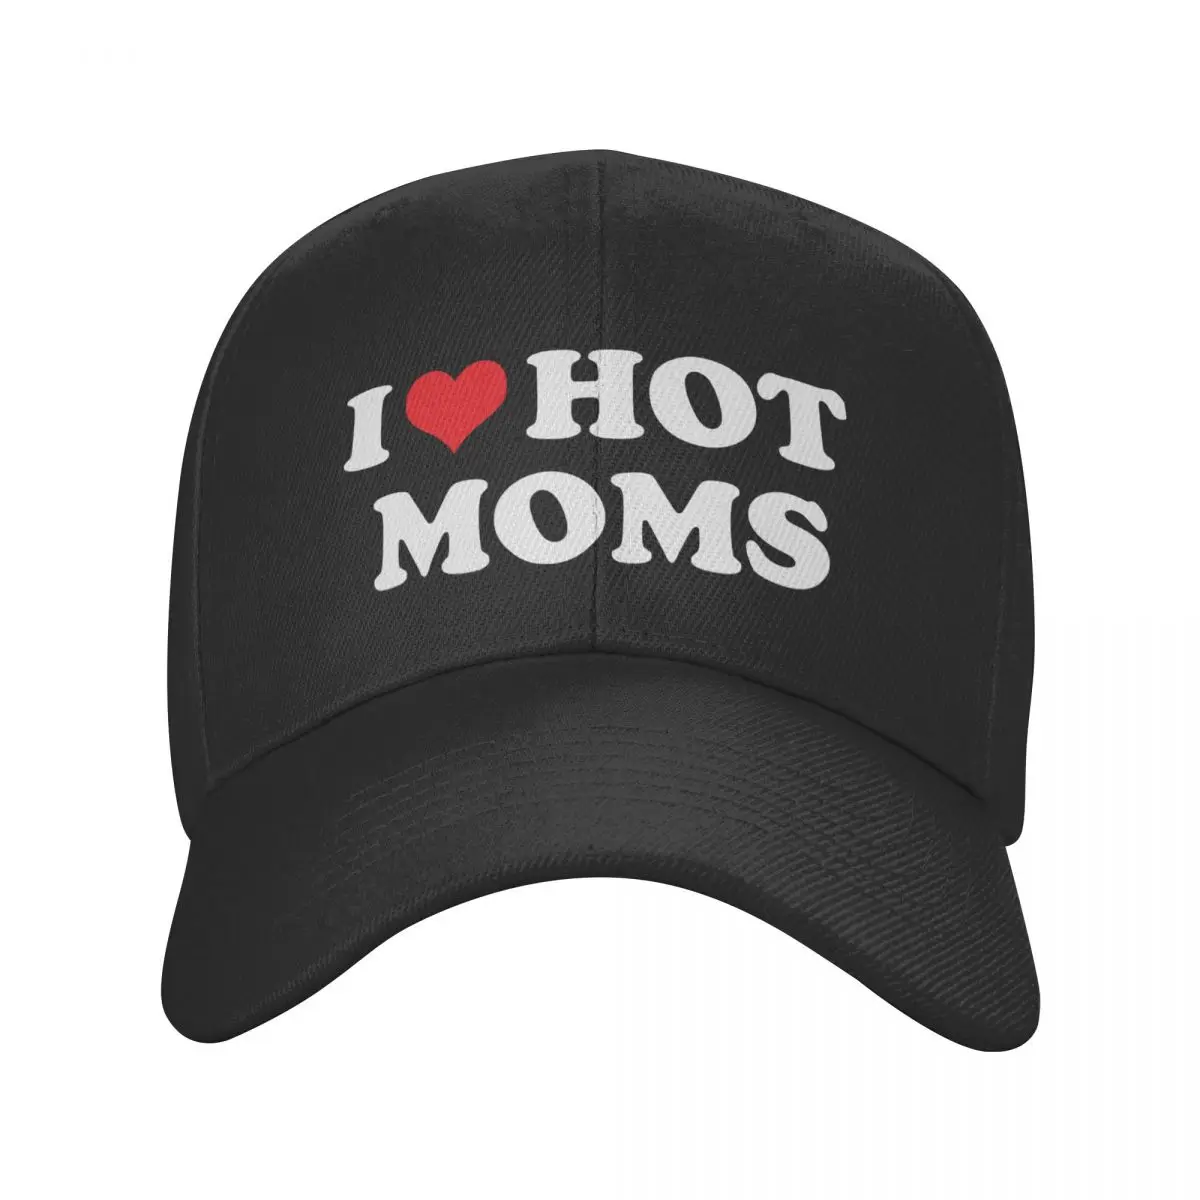 

Classic I Love Hot Moms Baseball Cap Men Women Personalized Adjustable Adult Dad Hat Summer Snapback Hats Trucker Caps